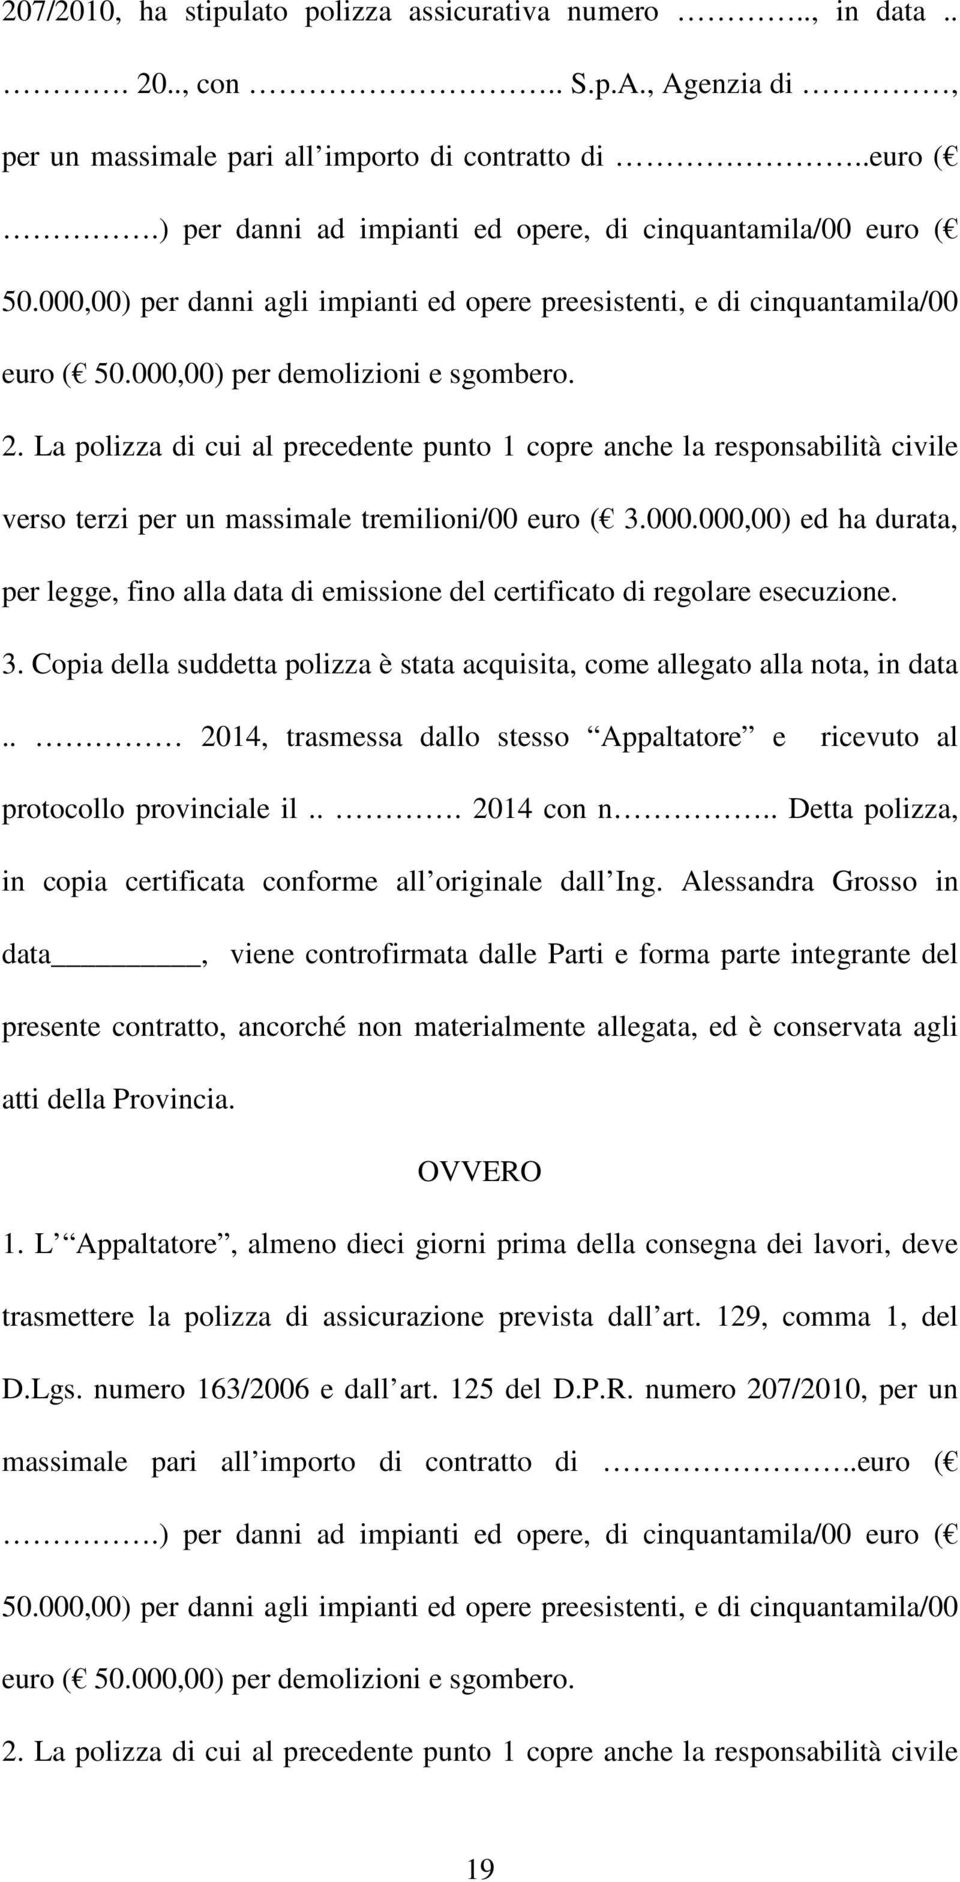 La polizza di cui al precedente punto 1 copre anche la responsabilità civile verso terzi per un massimale tremilioni/00 euro ( 3.000.